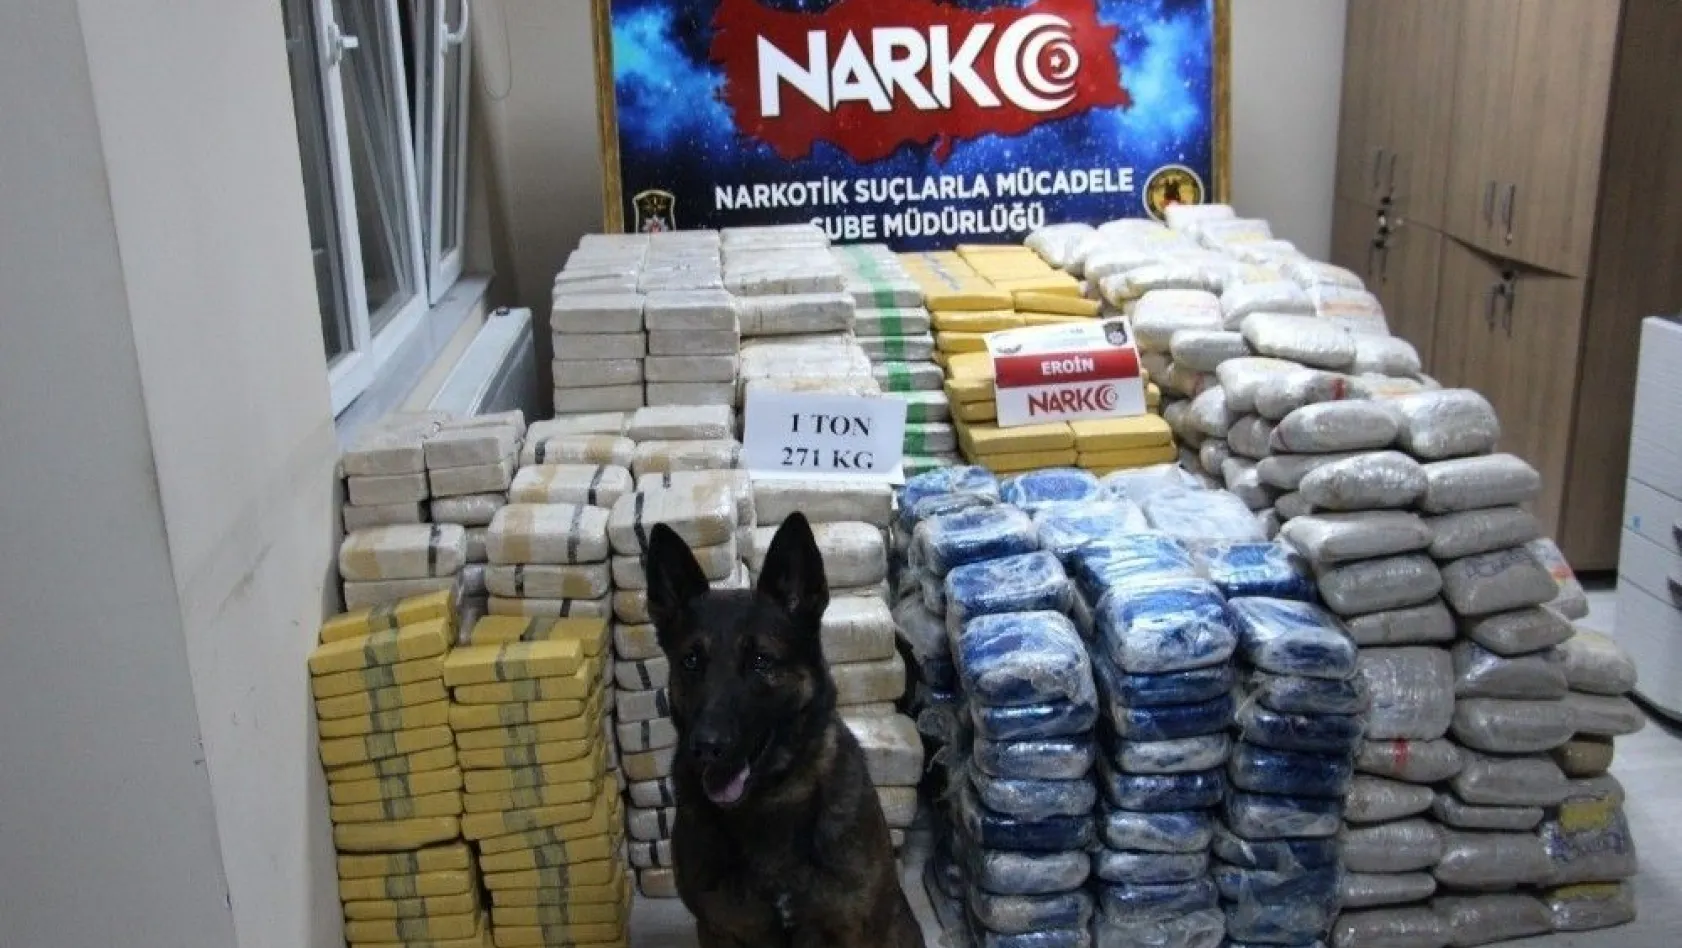 Erzincan Emniyet Müdüründen, ele geçirilen 1 ton 271 kilogram eroin maddesine ilişkin açıklama
